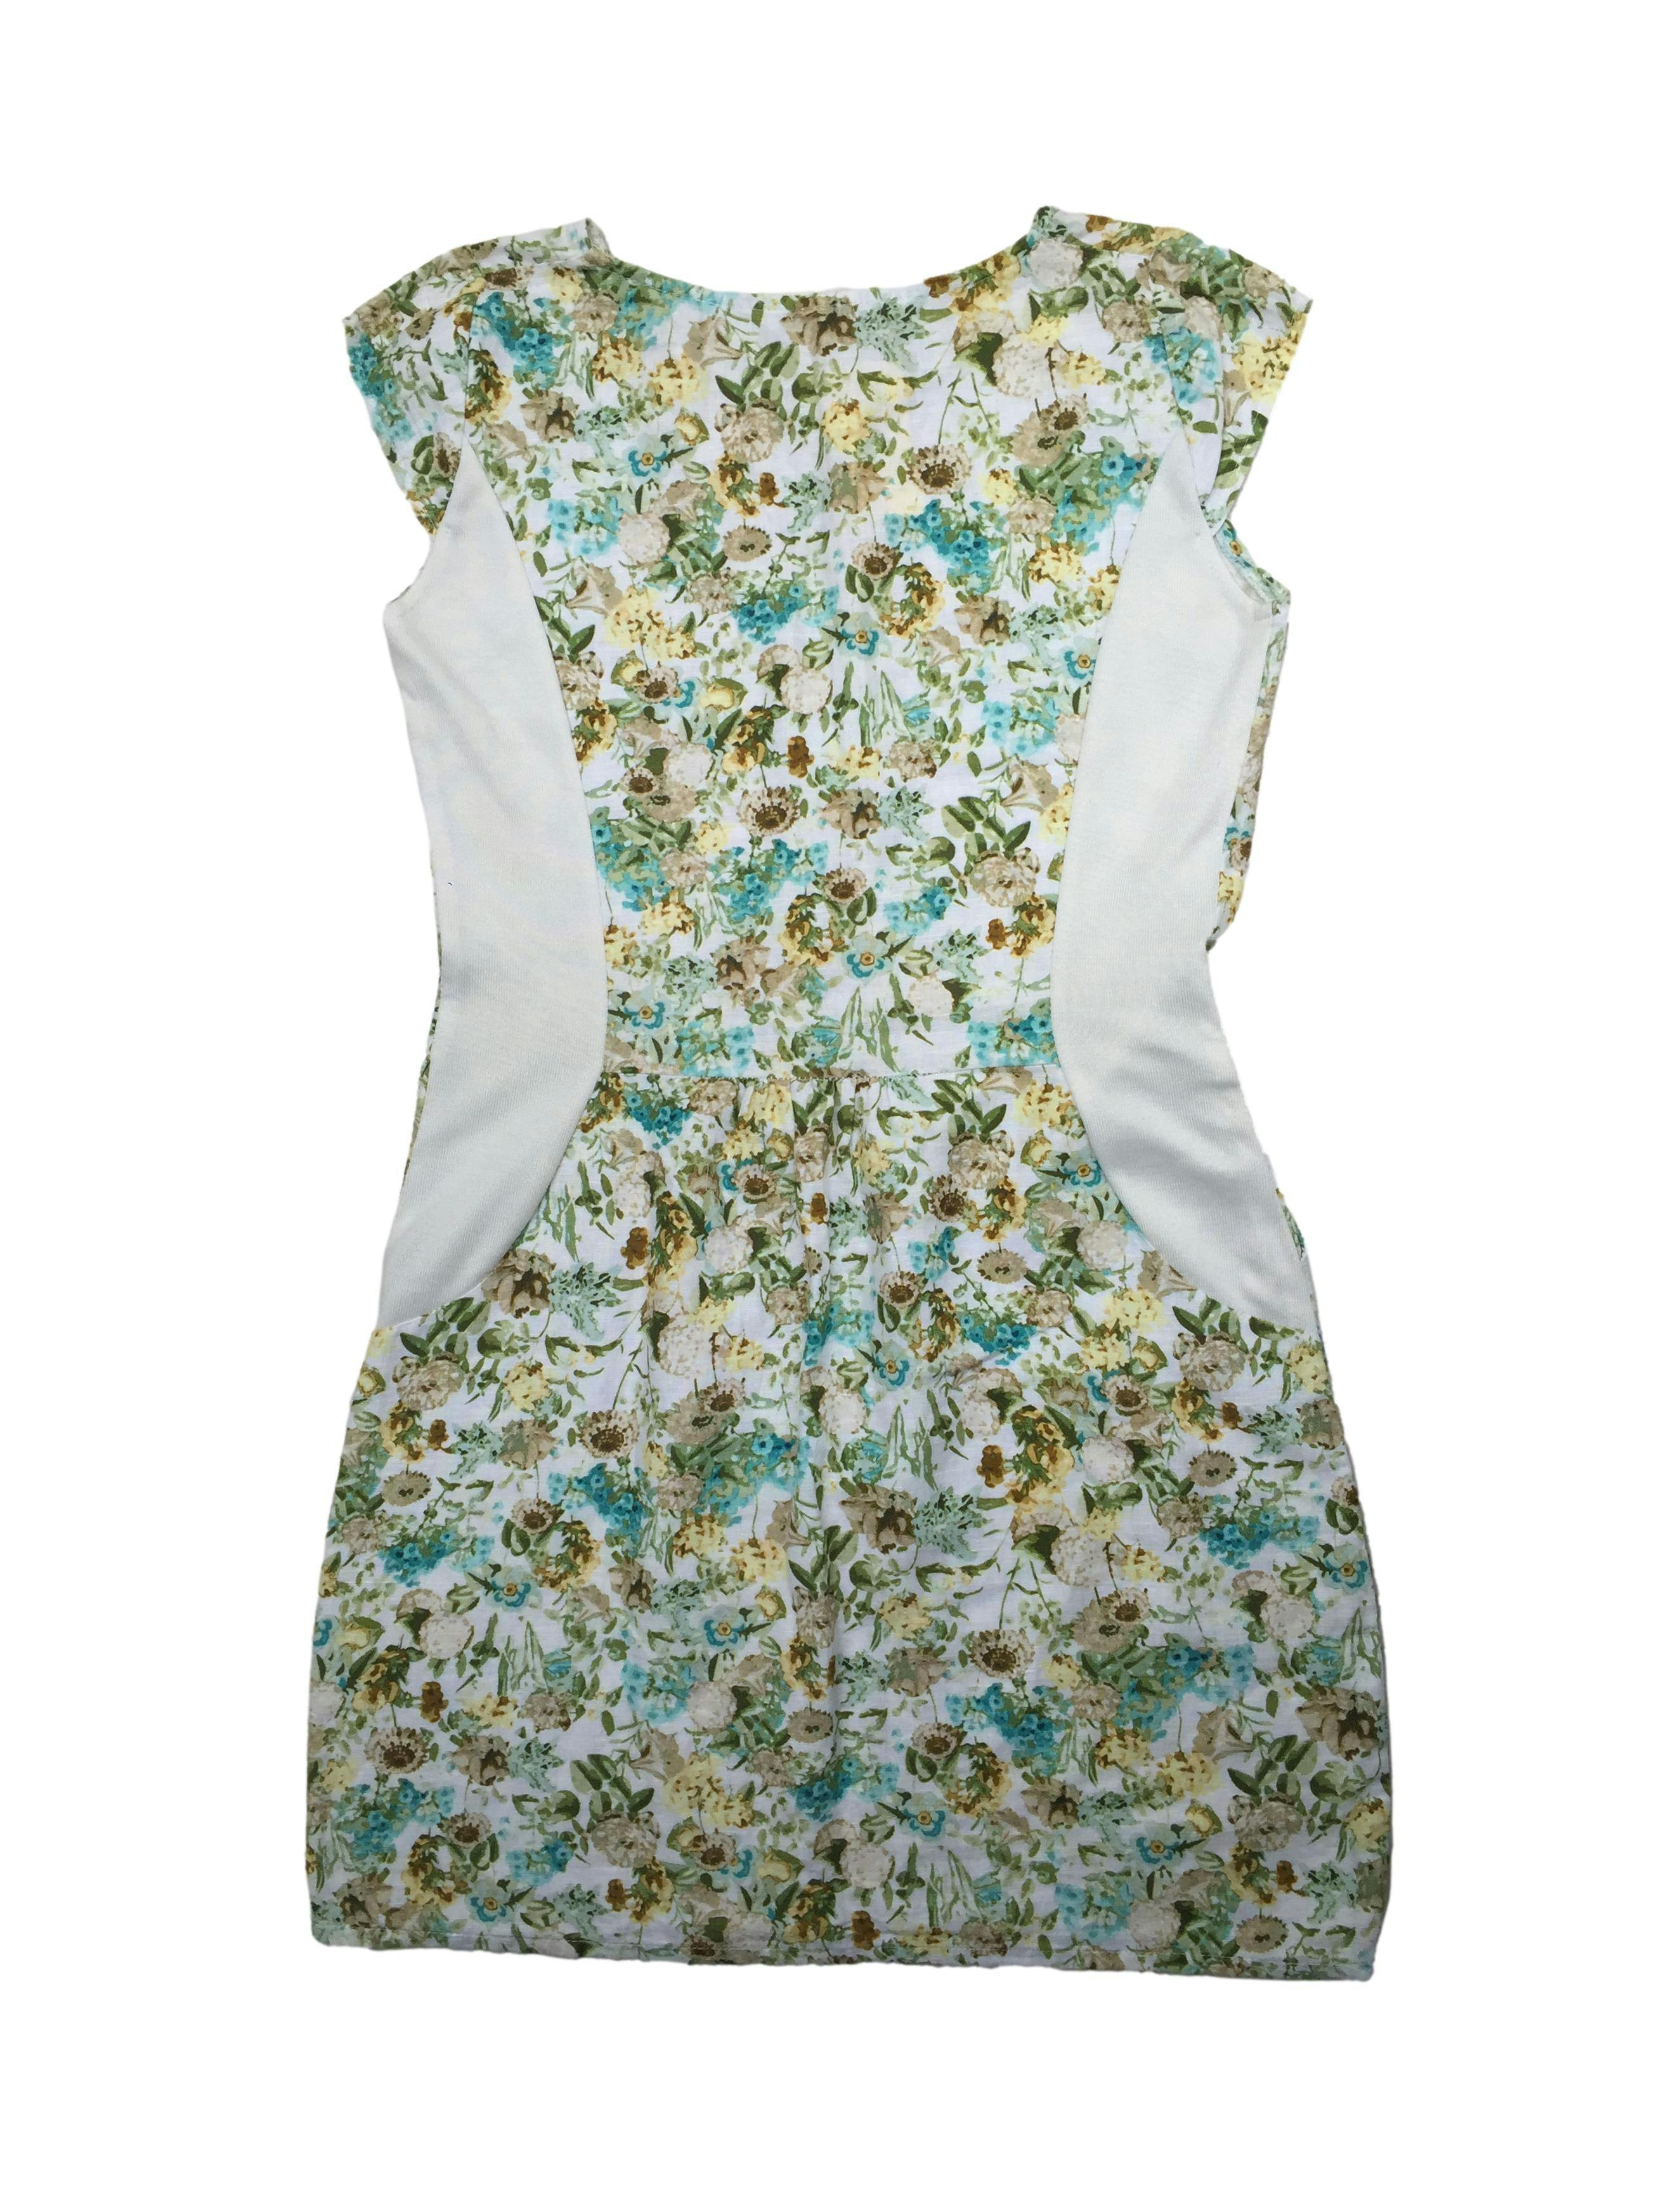 Vestido de lino crema con flores en tonos tierra, bolsillos laterales. Busto 90cm Largo 85cm